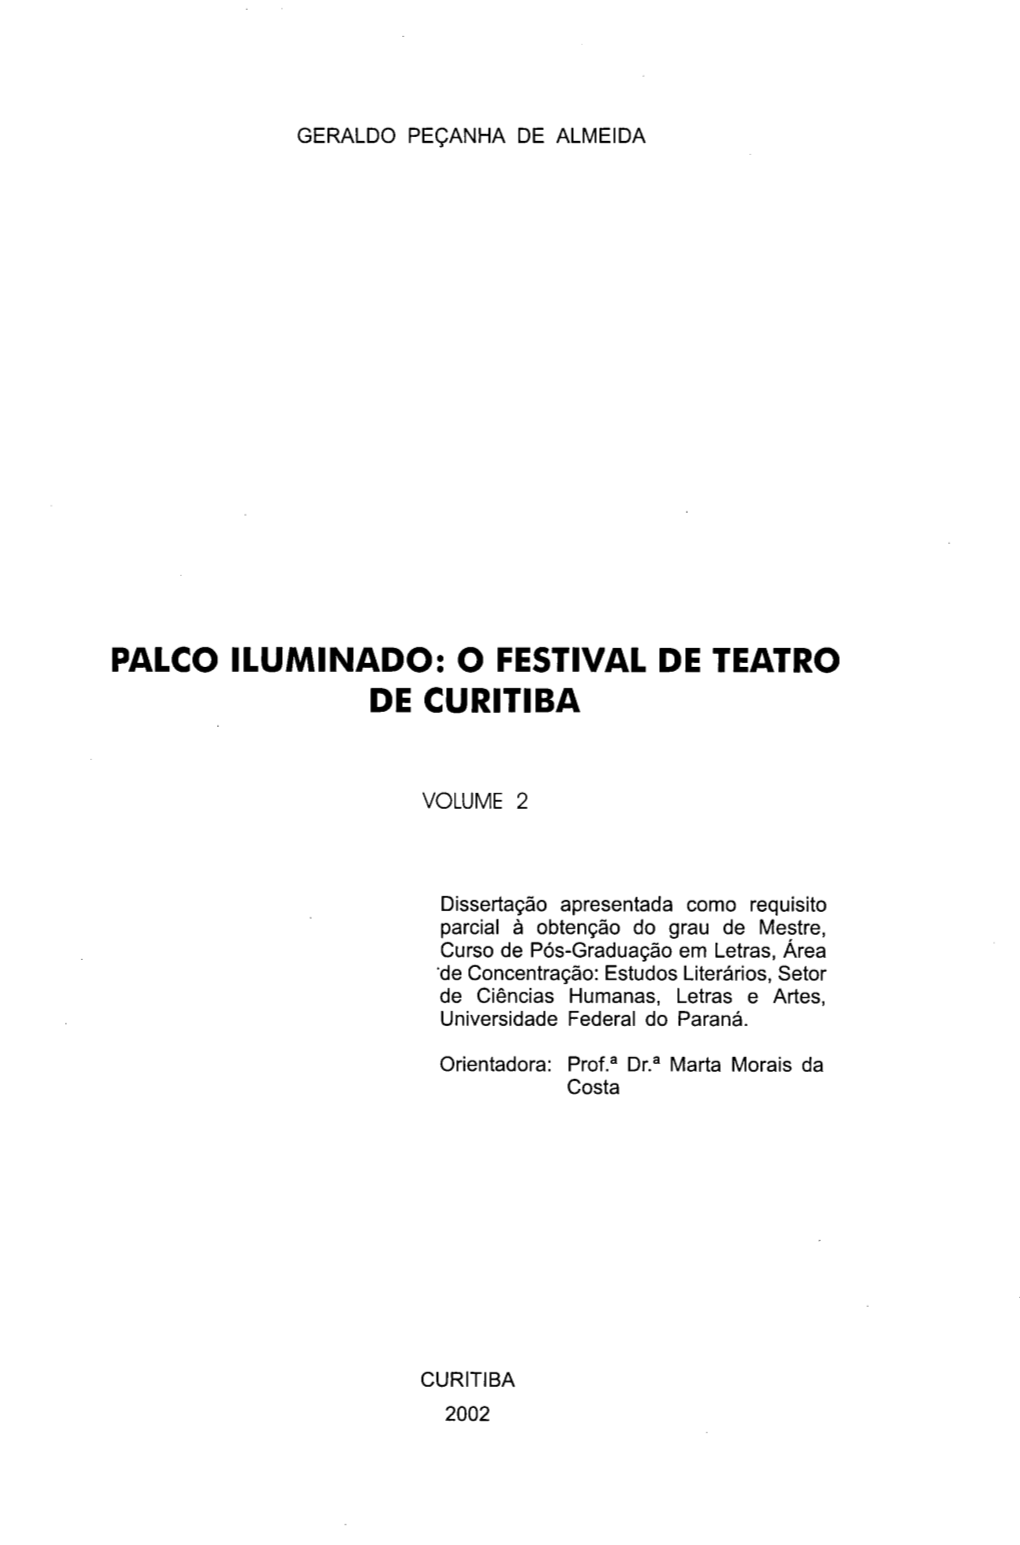 Palco Iluminado: O Festival De Teatro De Curitiba